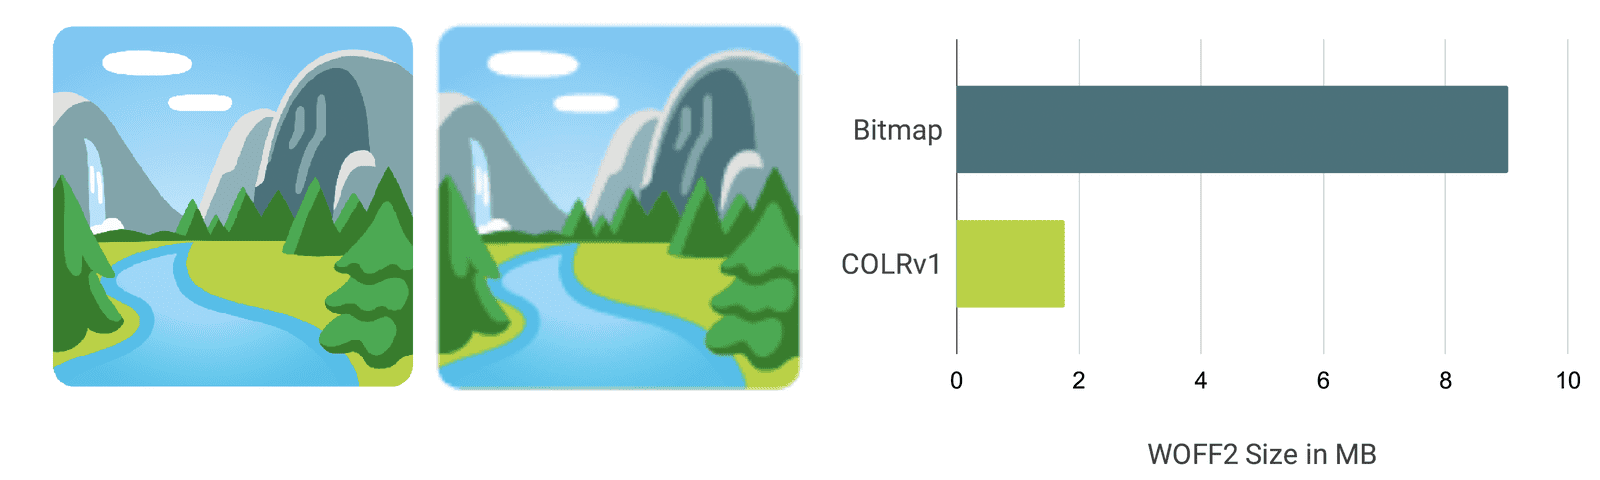 การแสดงข้อมูลผ่านภาพและแผนภูมิแท่งที่แสดงให้เห็นว่าแบบอักษร COLRv1 คมชัดและเล็กลงอย่างไร